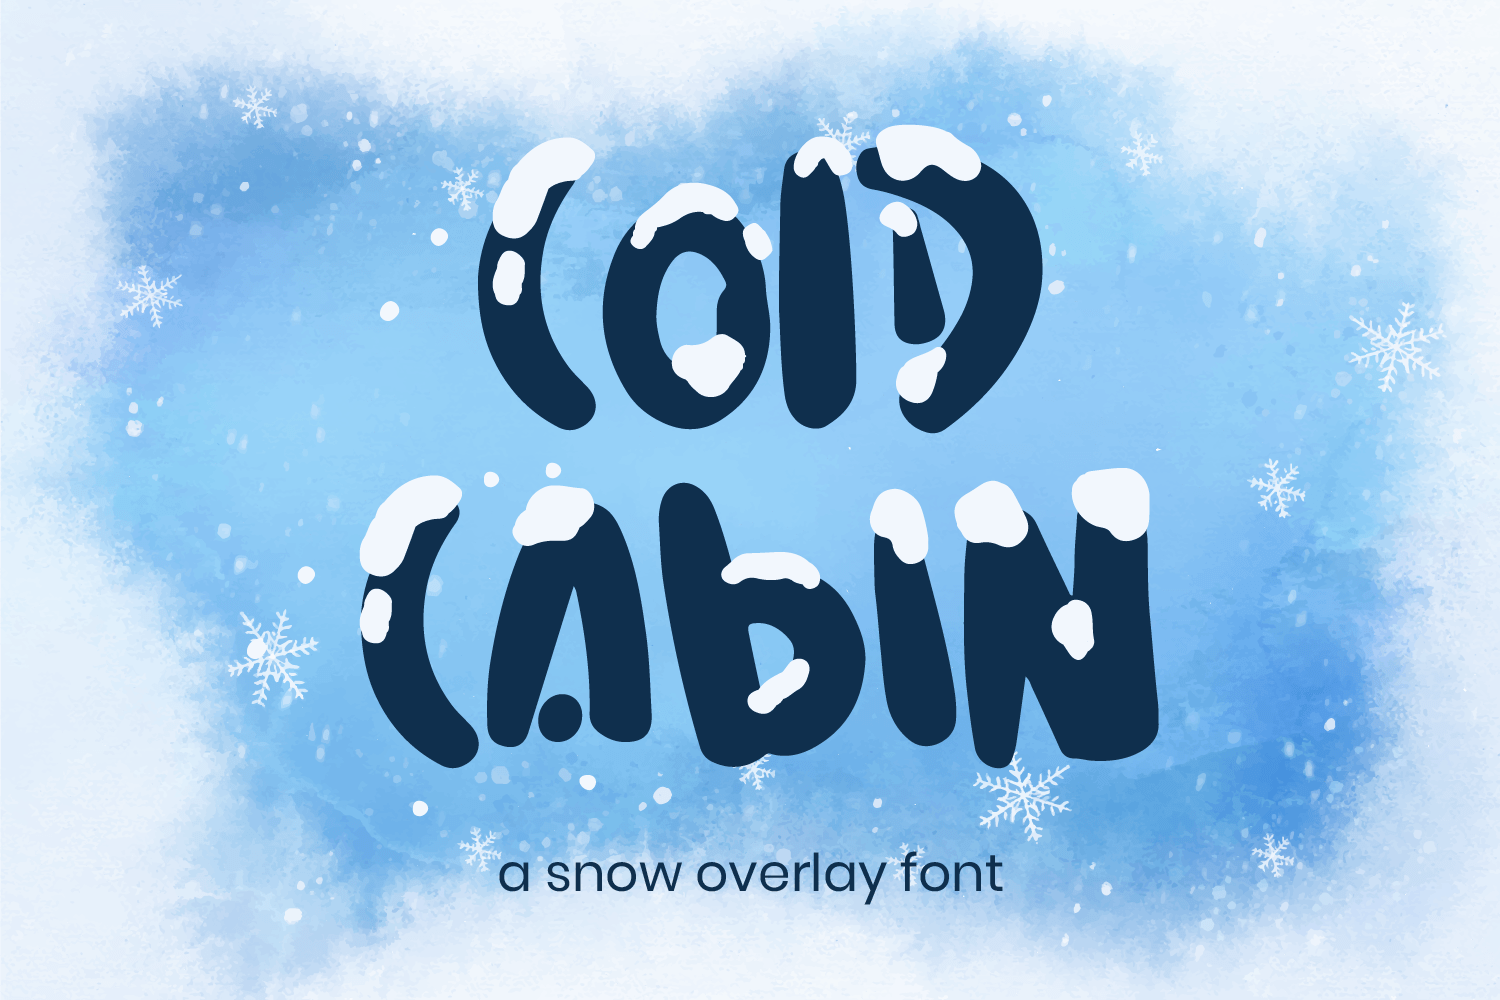 Cold Cabin - Demo